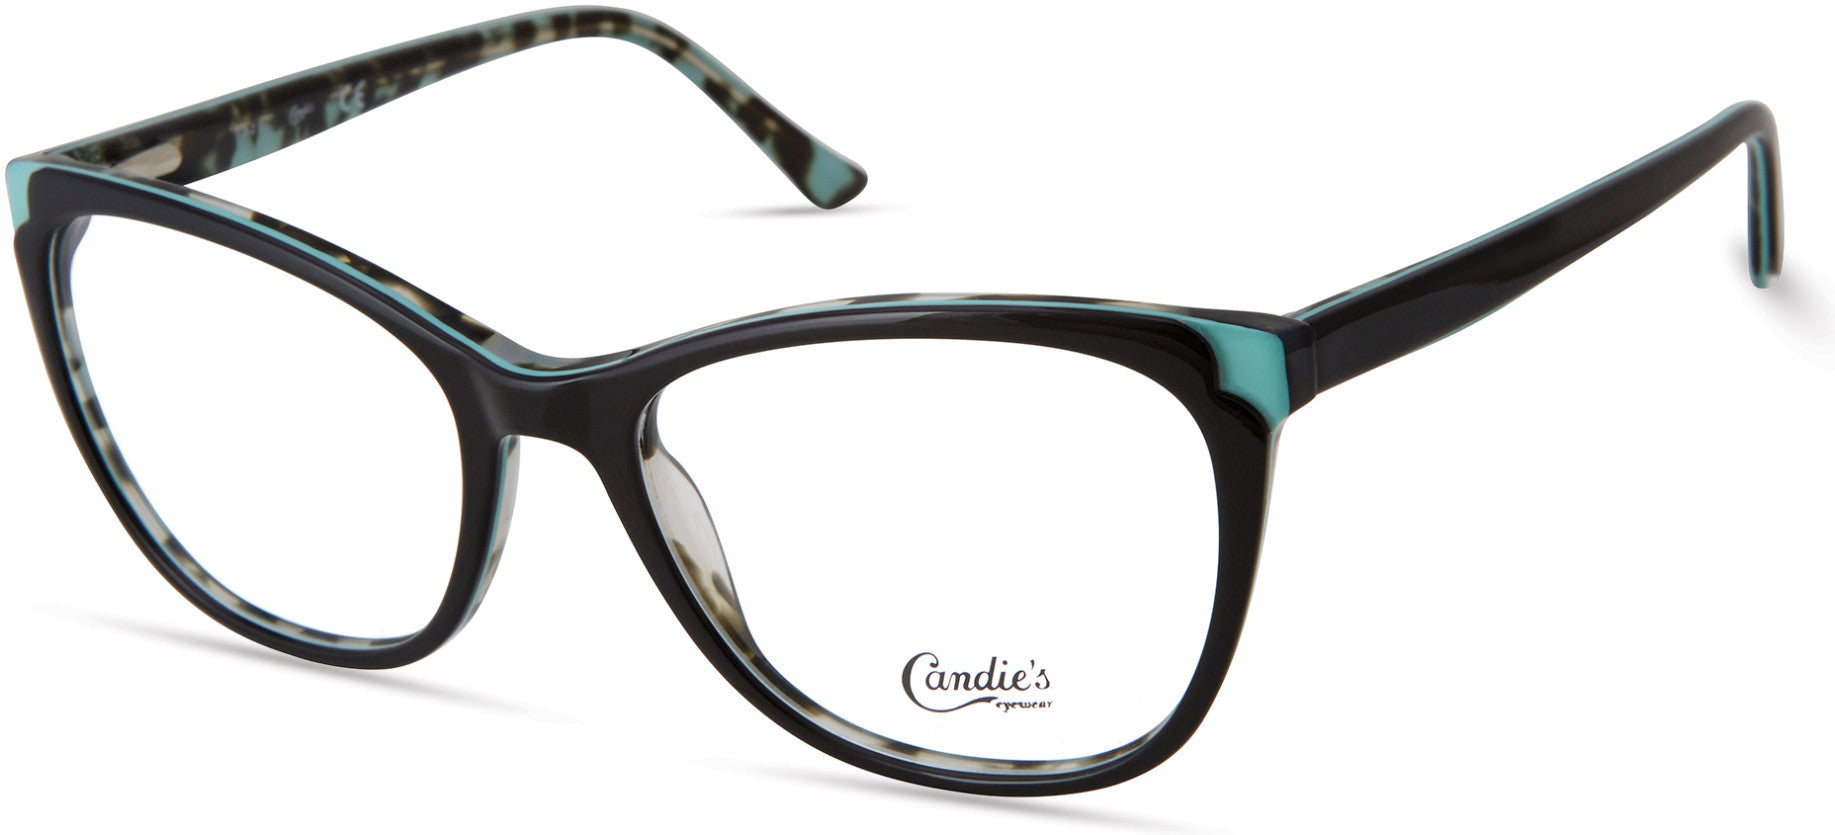 Candies CA0188 Square Eyeglasses 001-001 - Shiny Black